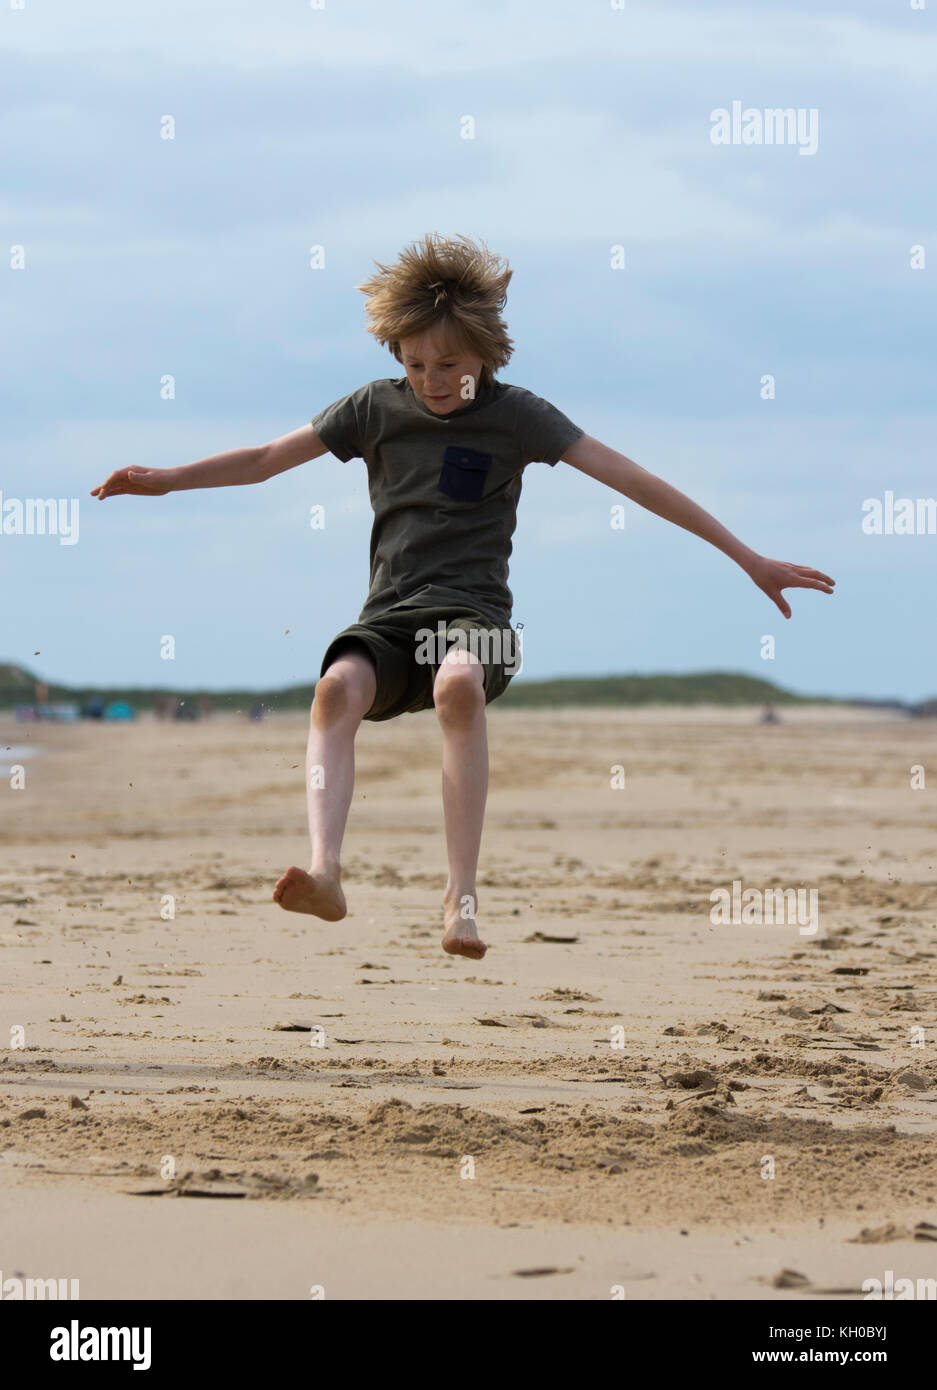 Ragazzo in midair facendo il salto in lungo su una spiaggia Foto Stock